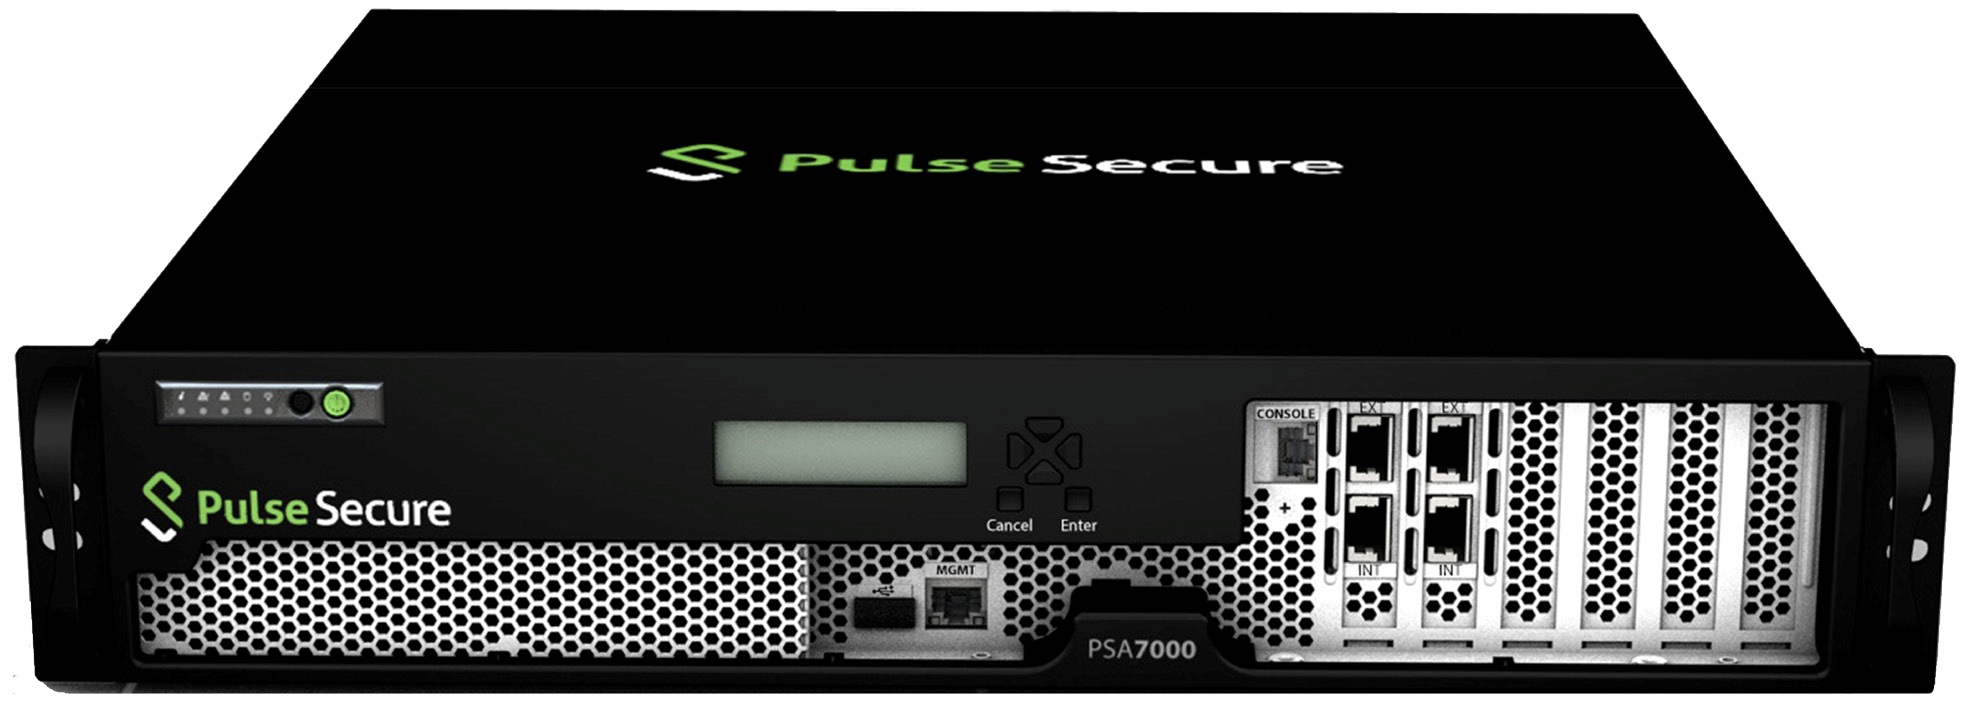 Pulse Secure unveils next generation mobile access